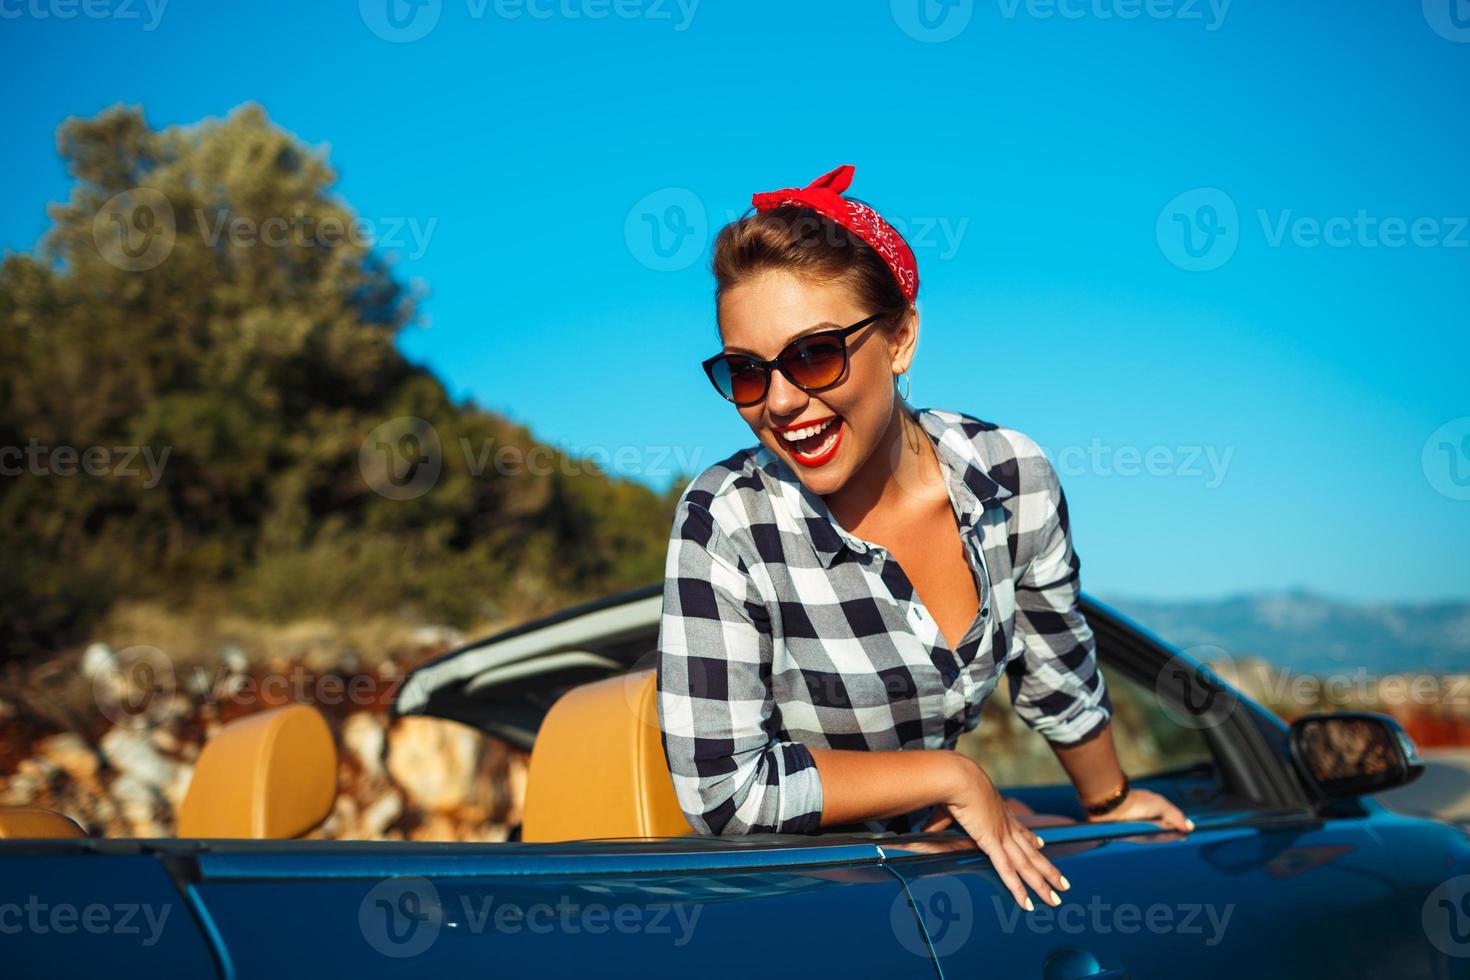 schön Stift oben Frau Sitzung im Cabrio, genießen Ausflug auf Luxus modern Auto mit öffnen Dach foto